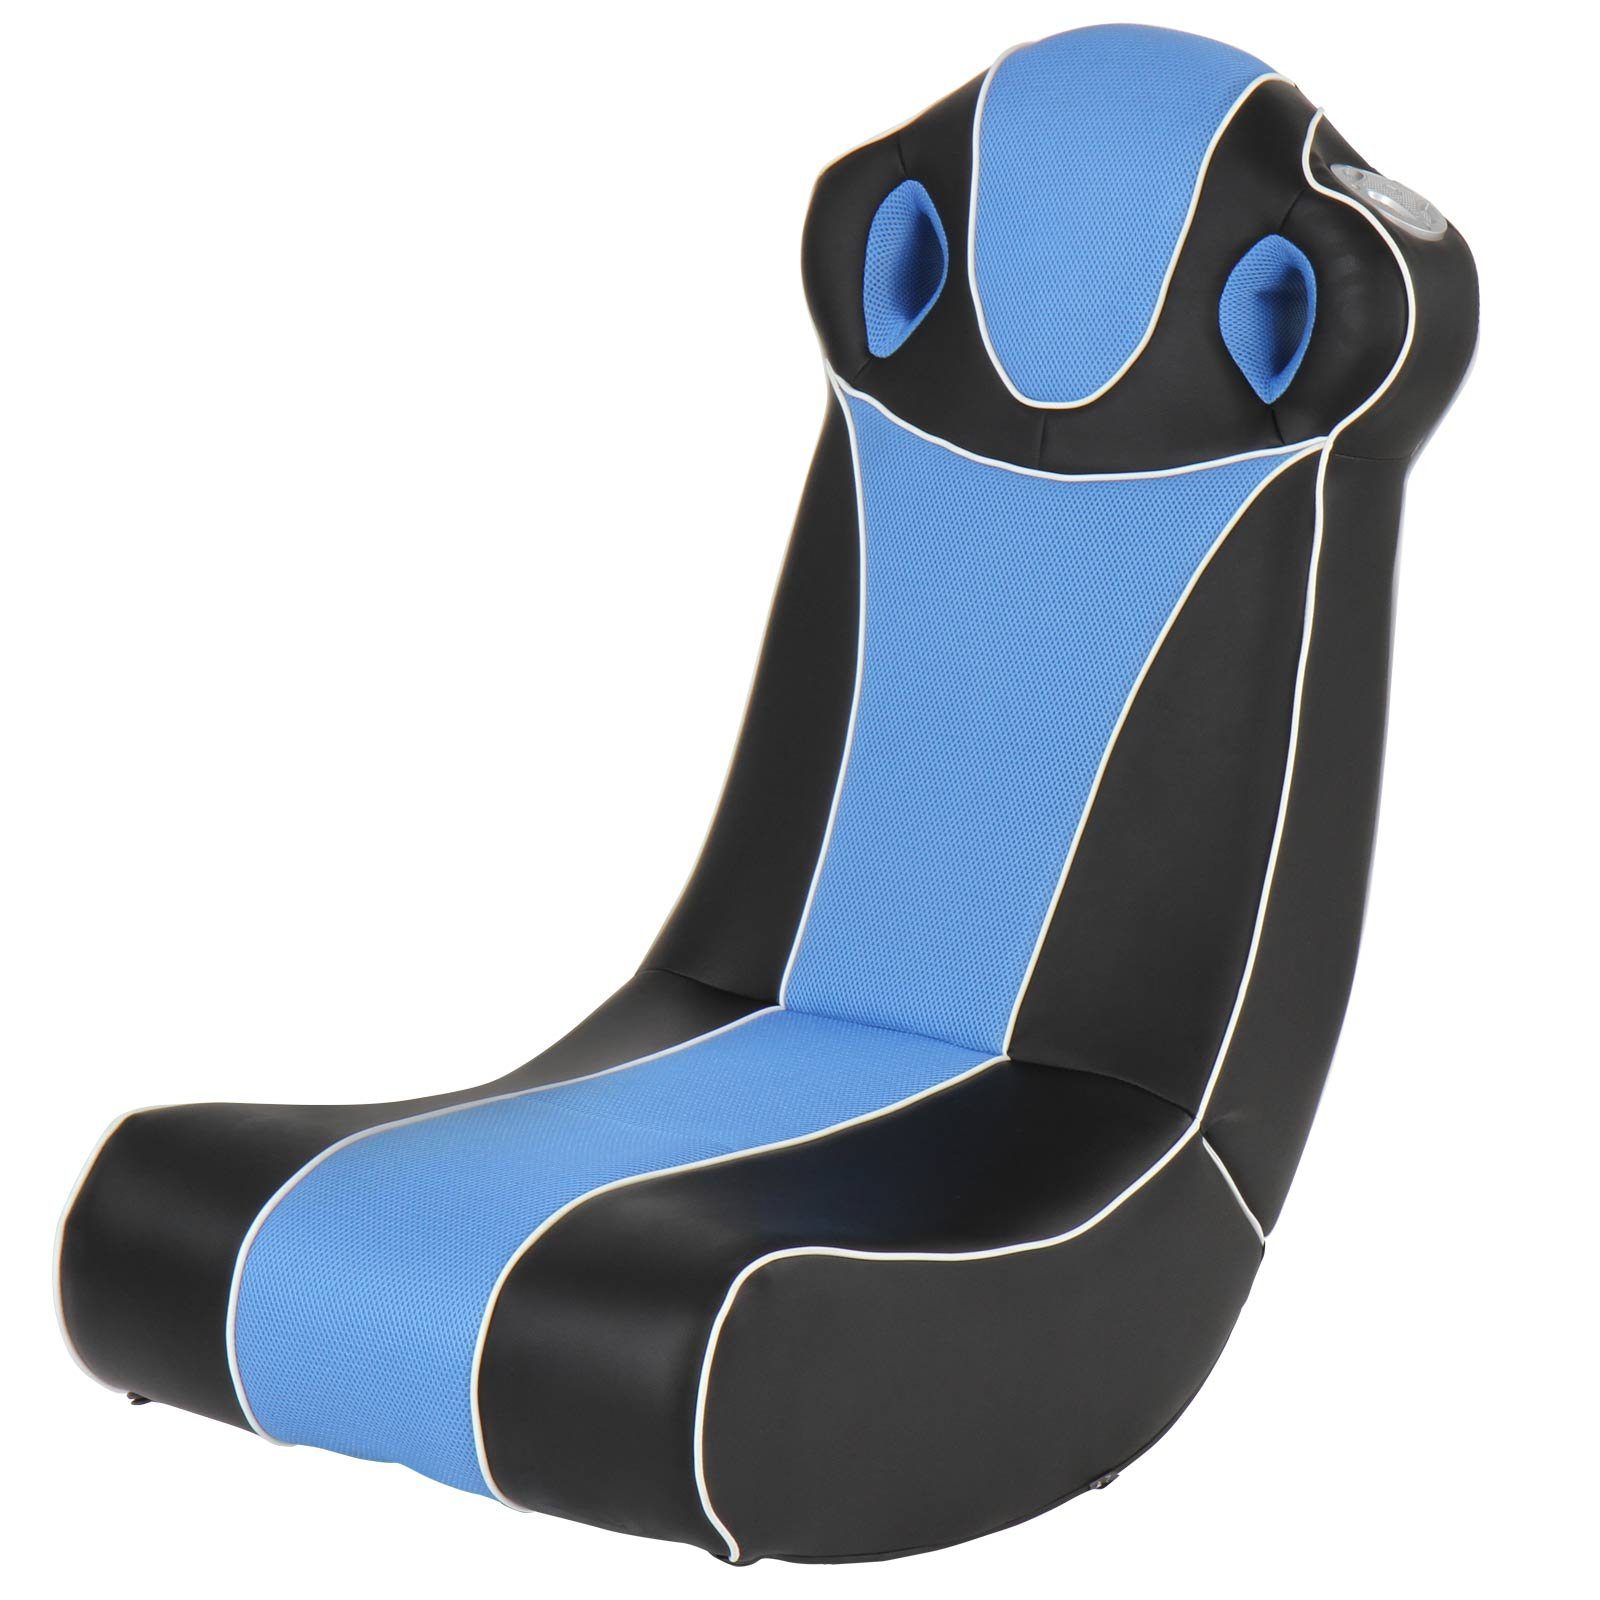 MIADOMODO Gaming Chair Soundsessel - Blau/Schwarz aus Kunstleder, zusammenklappbar, Lautsprecher mit